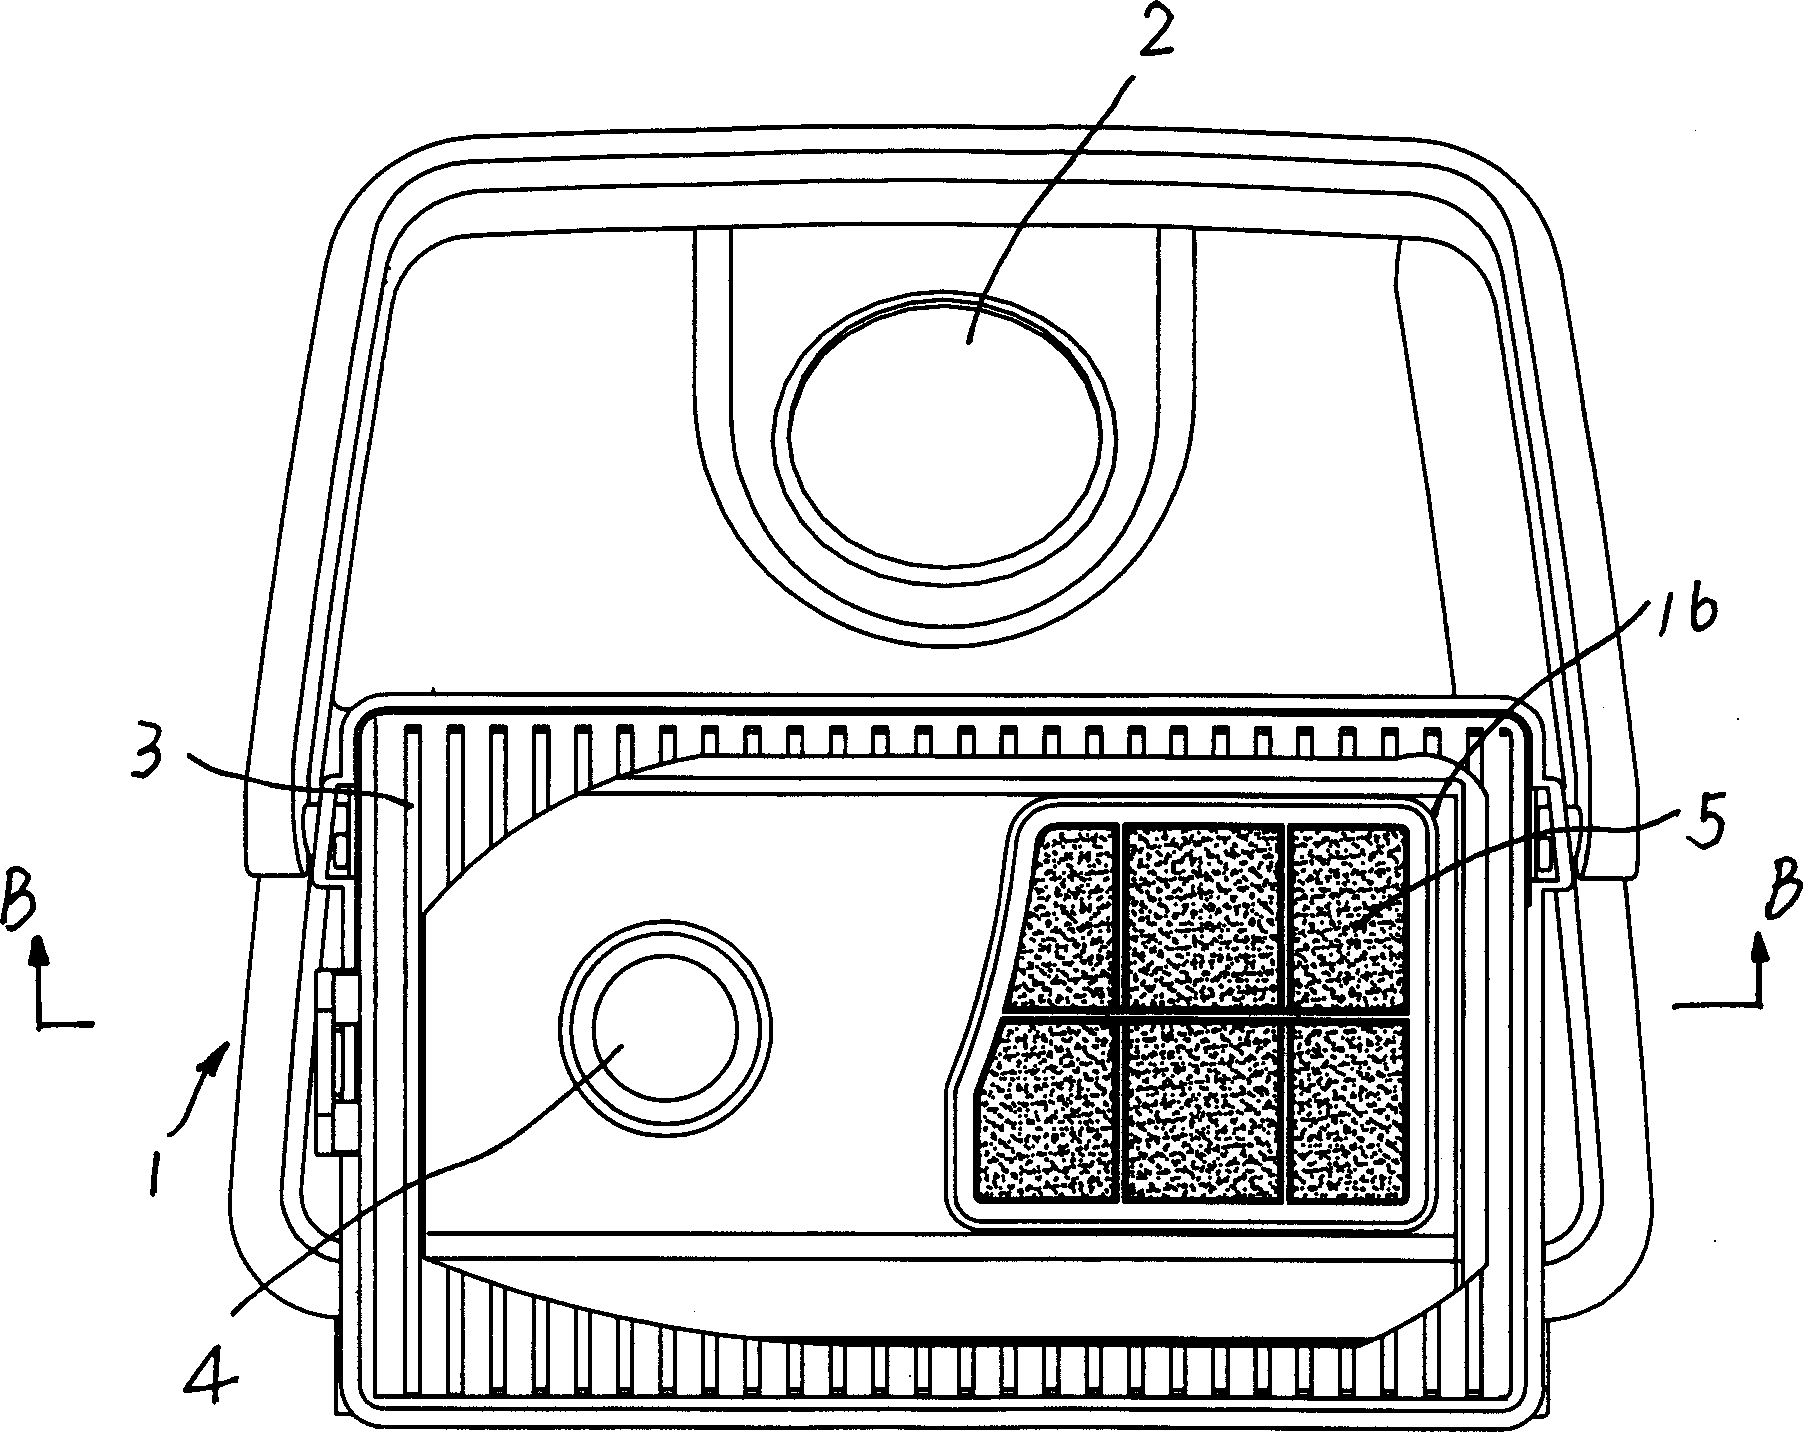 Dust separator of vacuum cleaner